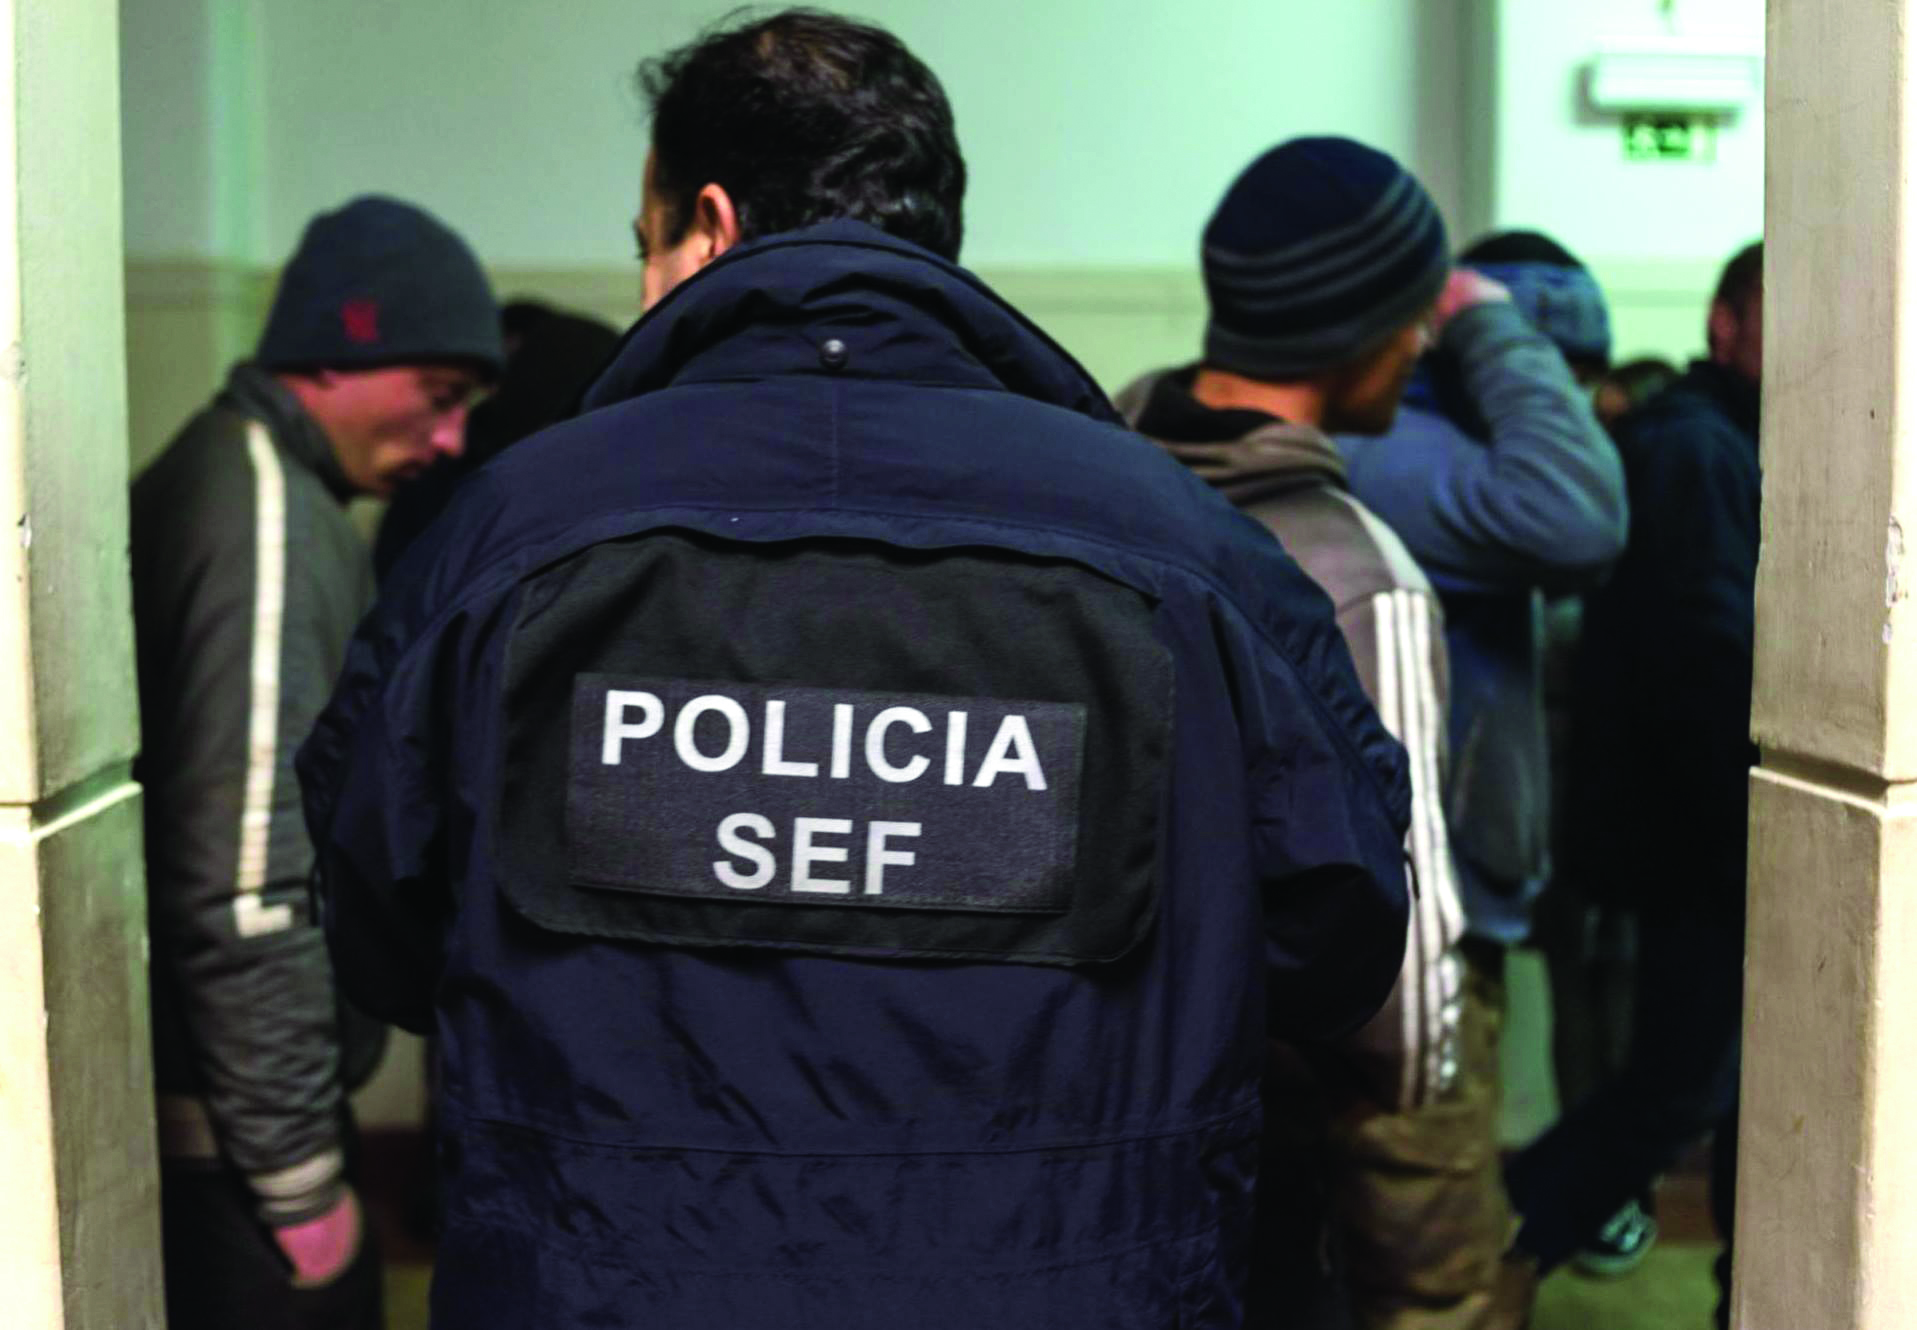 Migração ilegal. Cerca de 10 detidos em megaoperação